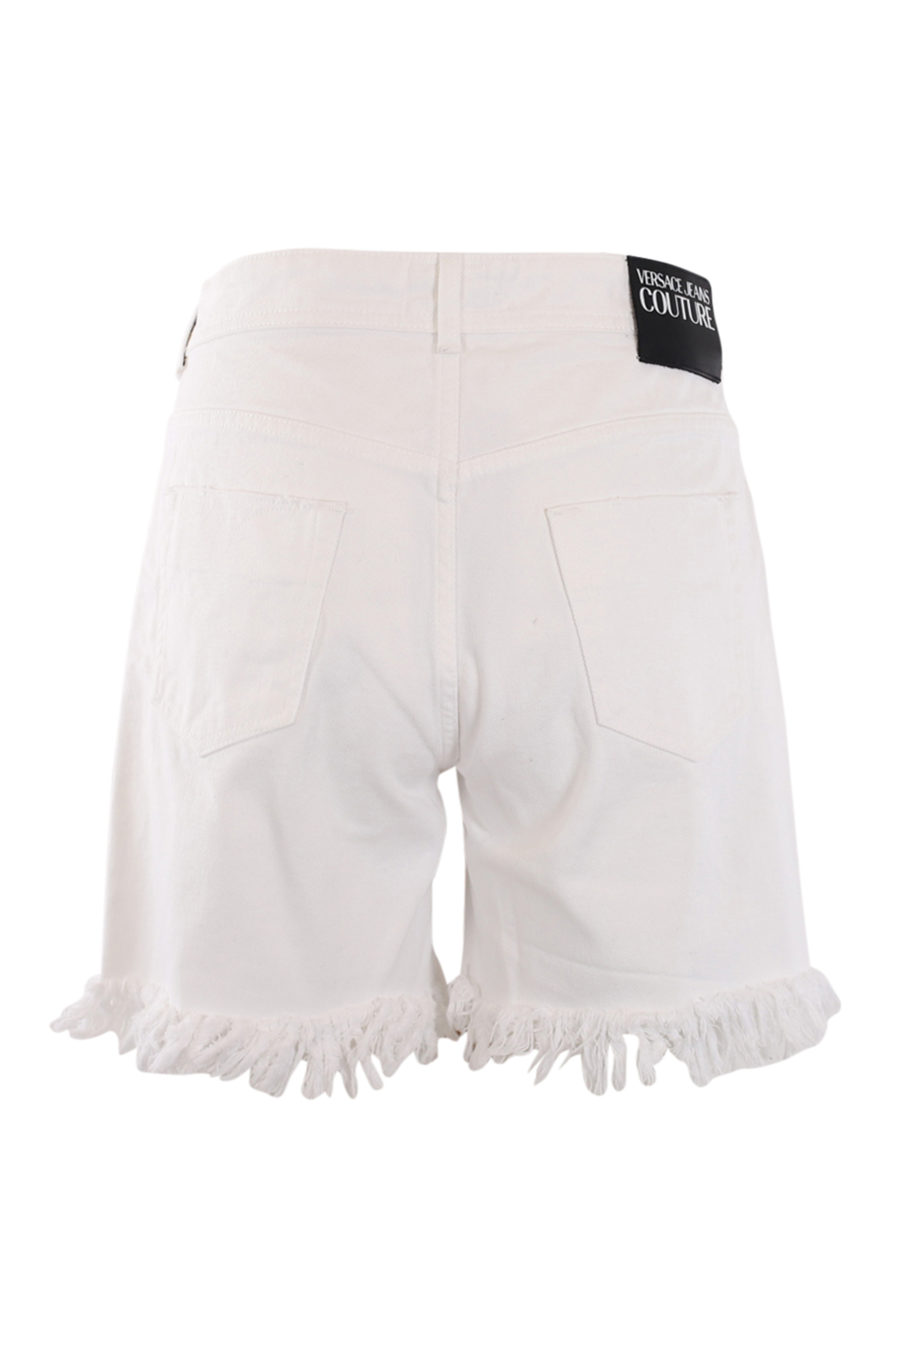 Weiße Shorts mit Wendeschal - IMG 0592